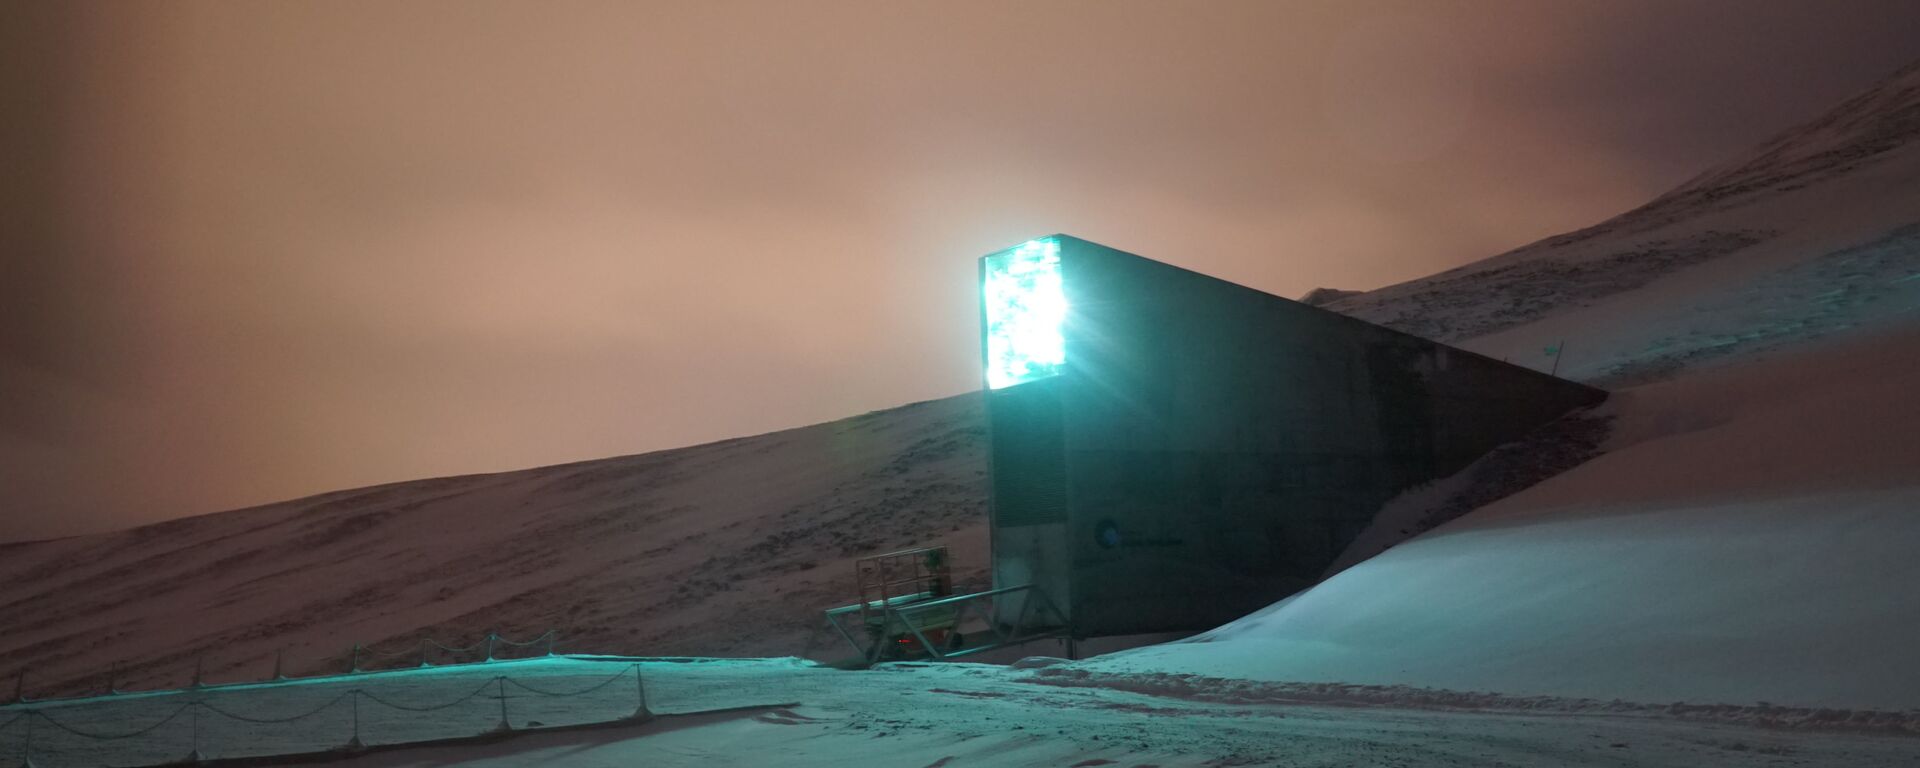 'Bunker do apocalipse' guarda em segurança sementes do mundo inteiro na ilha norueguesa de Spitsbergen - Sputnik Brasil, 1920, 10.07.2022